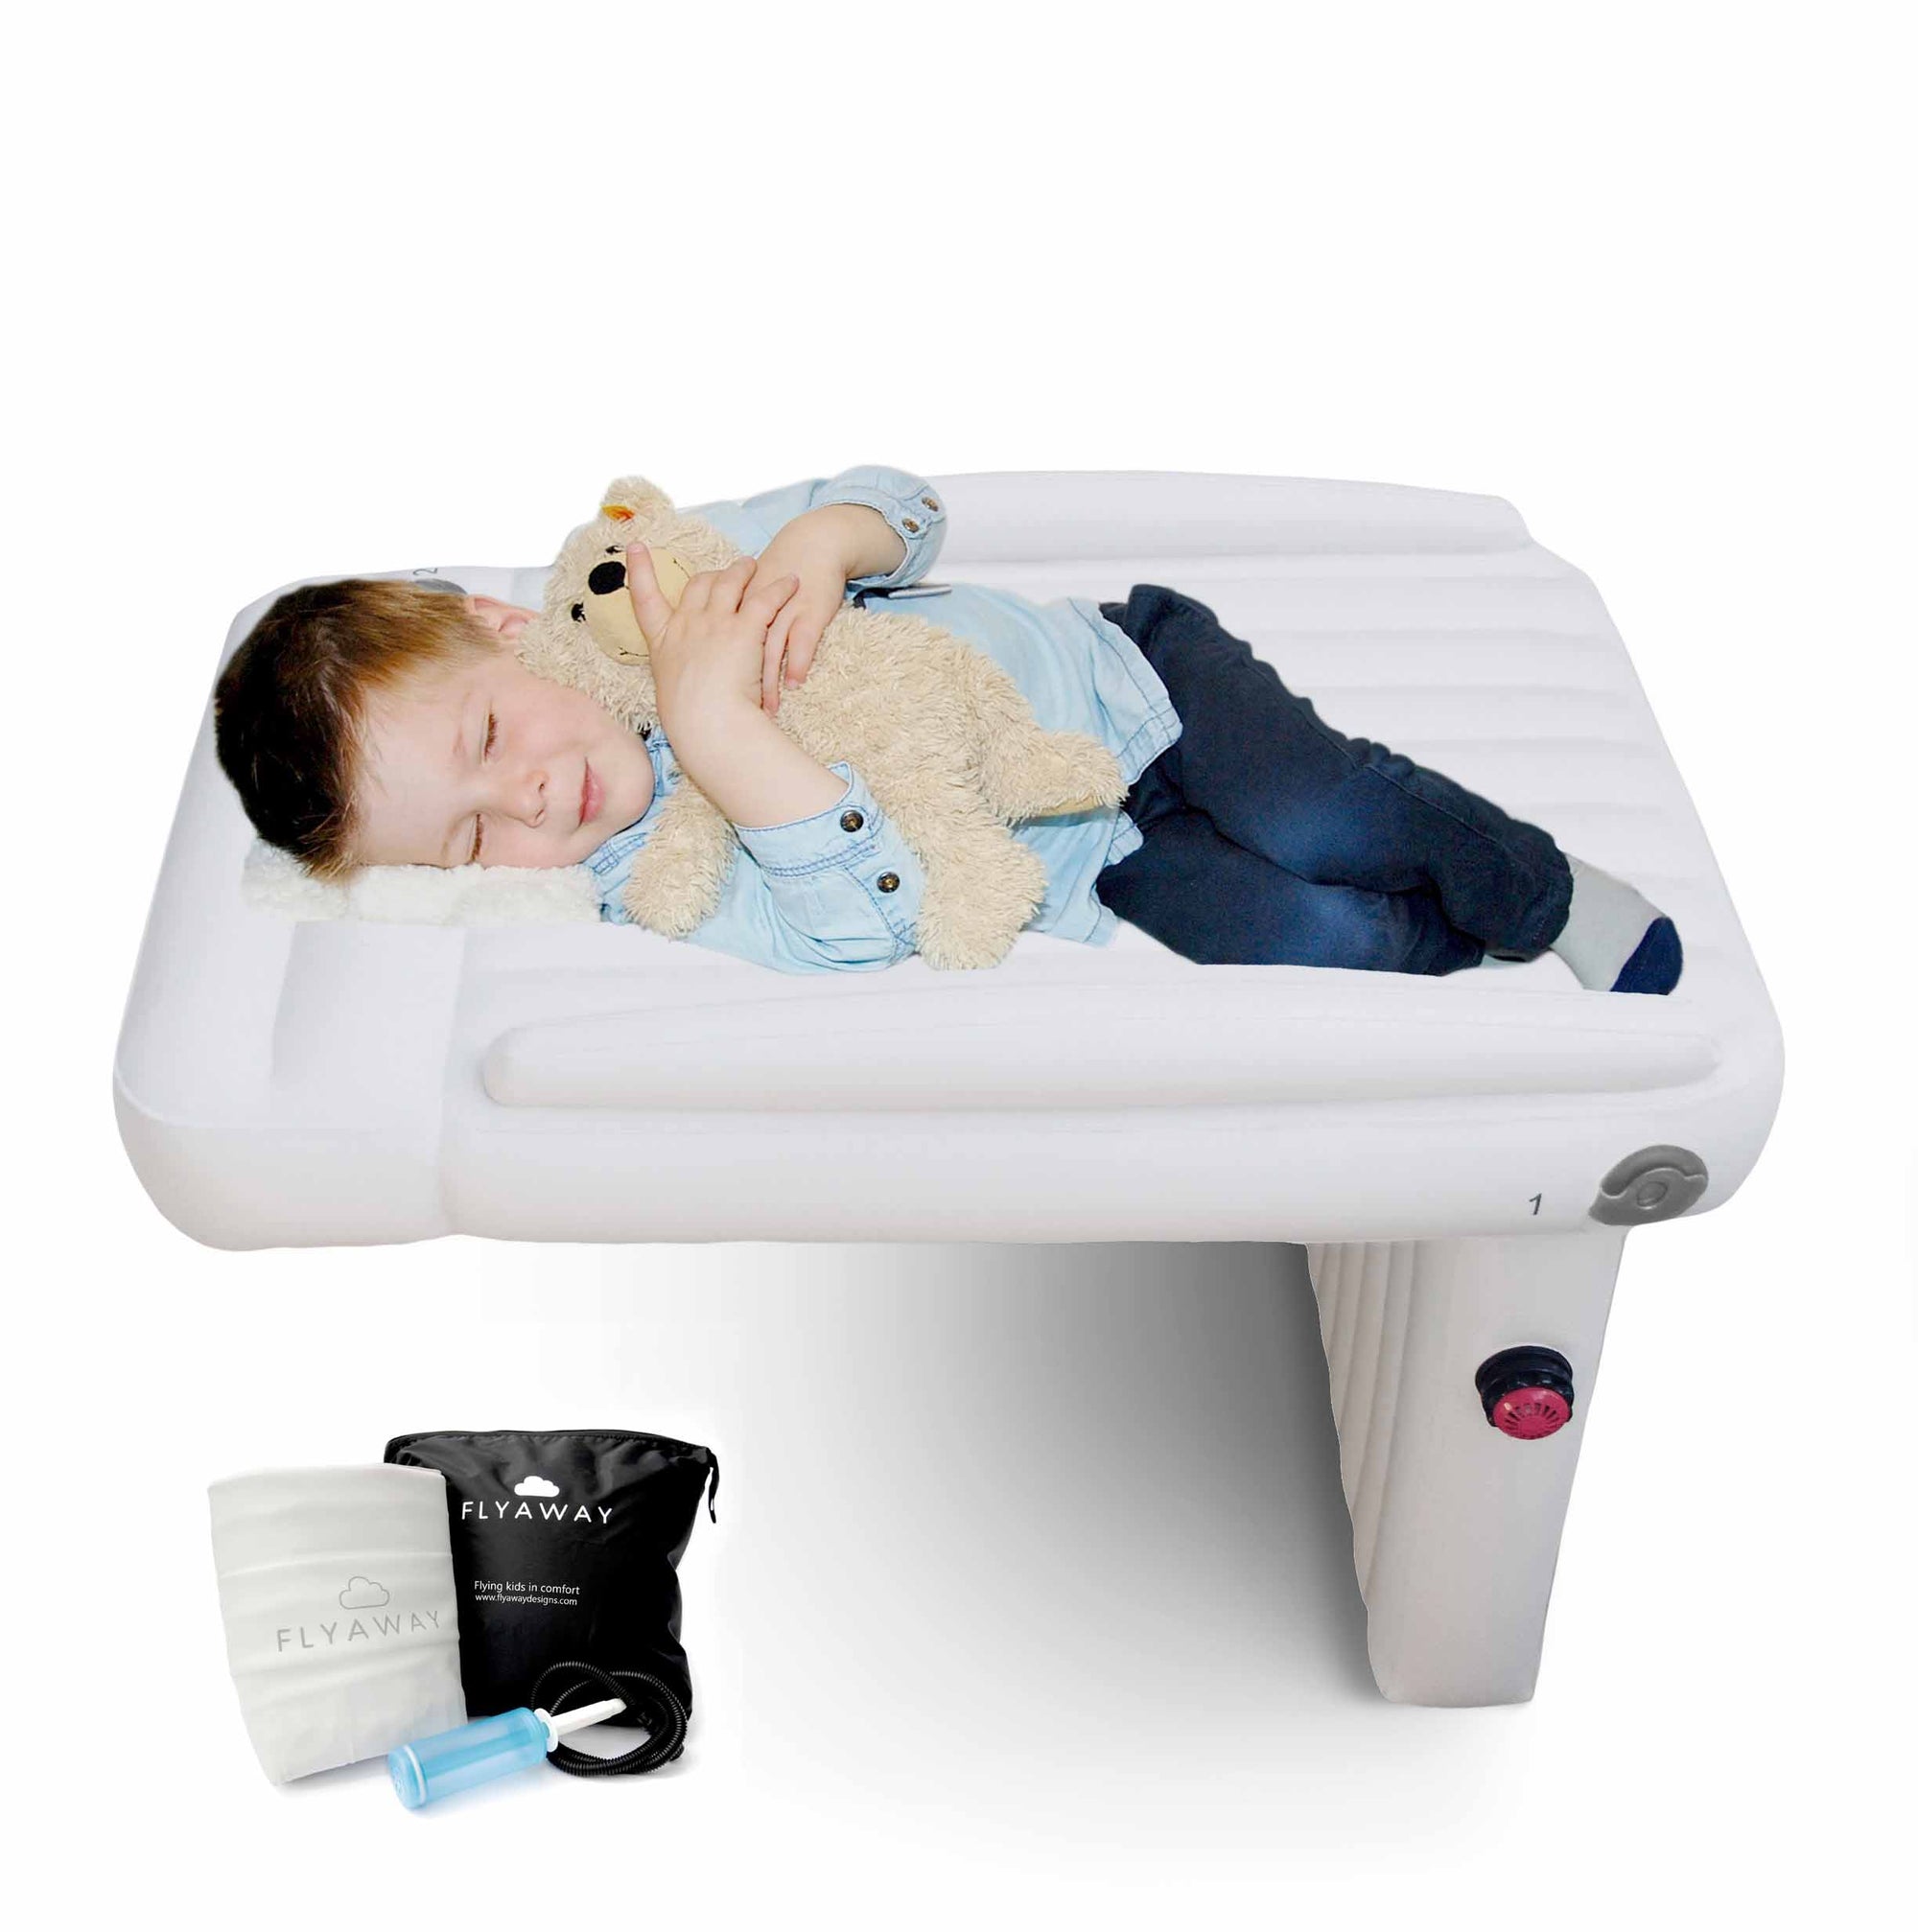 Flyaway Designs: Bed Help your child sleep flights!